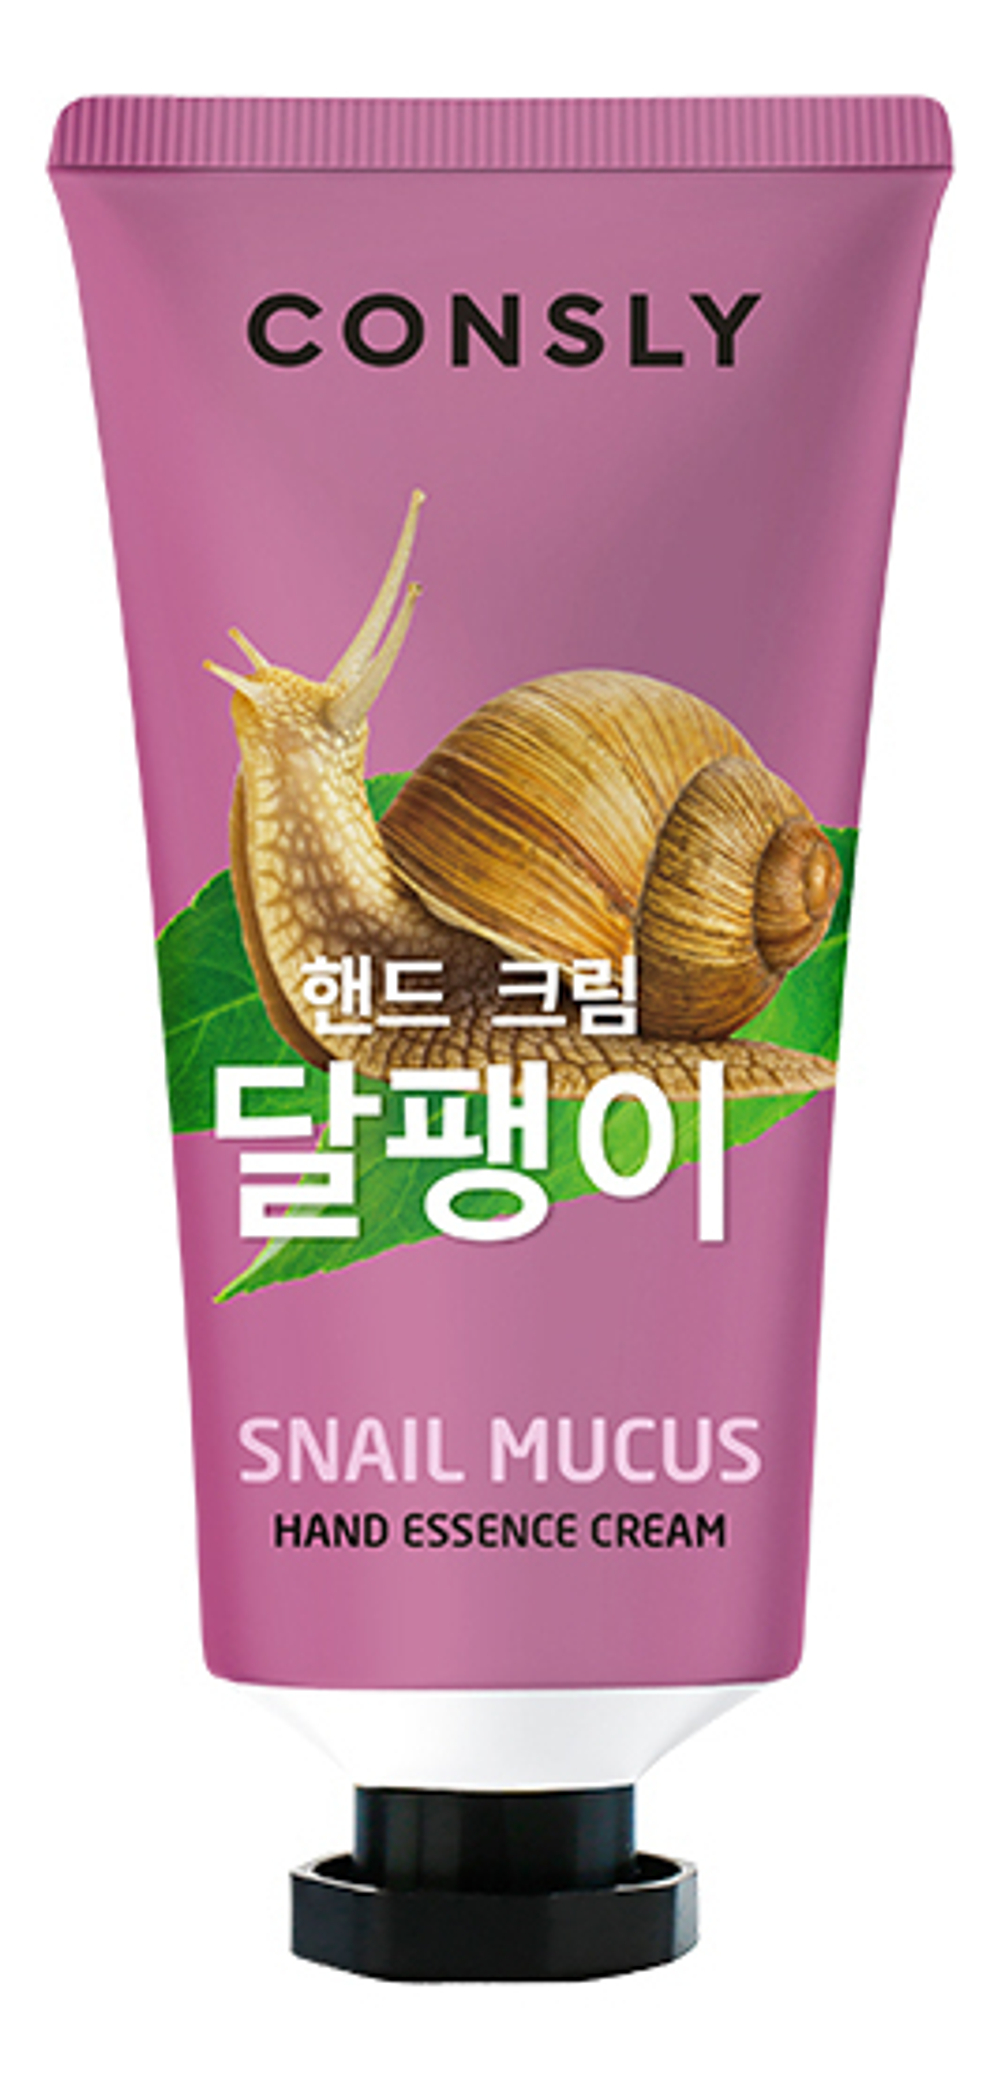 Крем-сыворотка для рук с муцином улитки - Snail hand essence cream, 100мл Consly